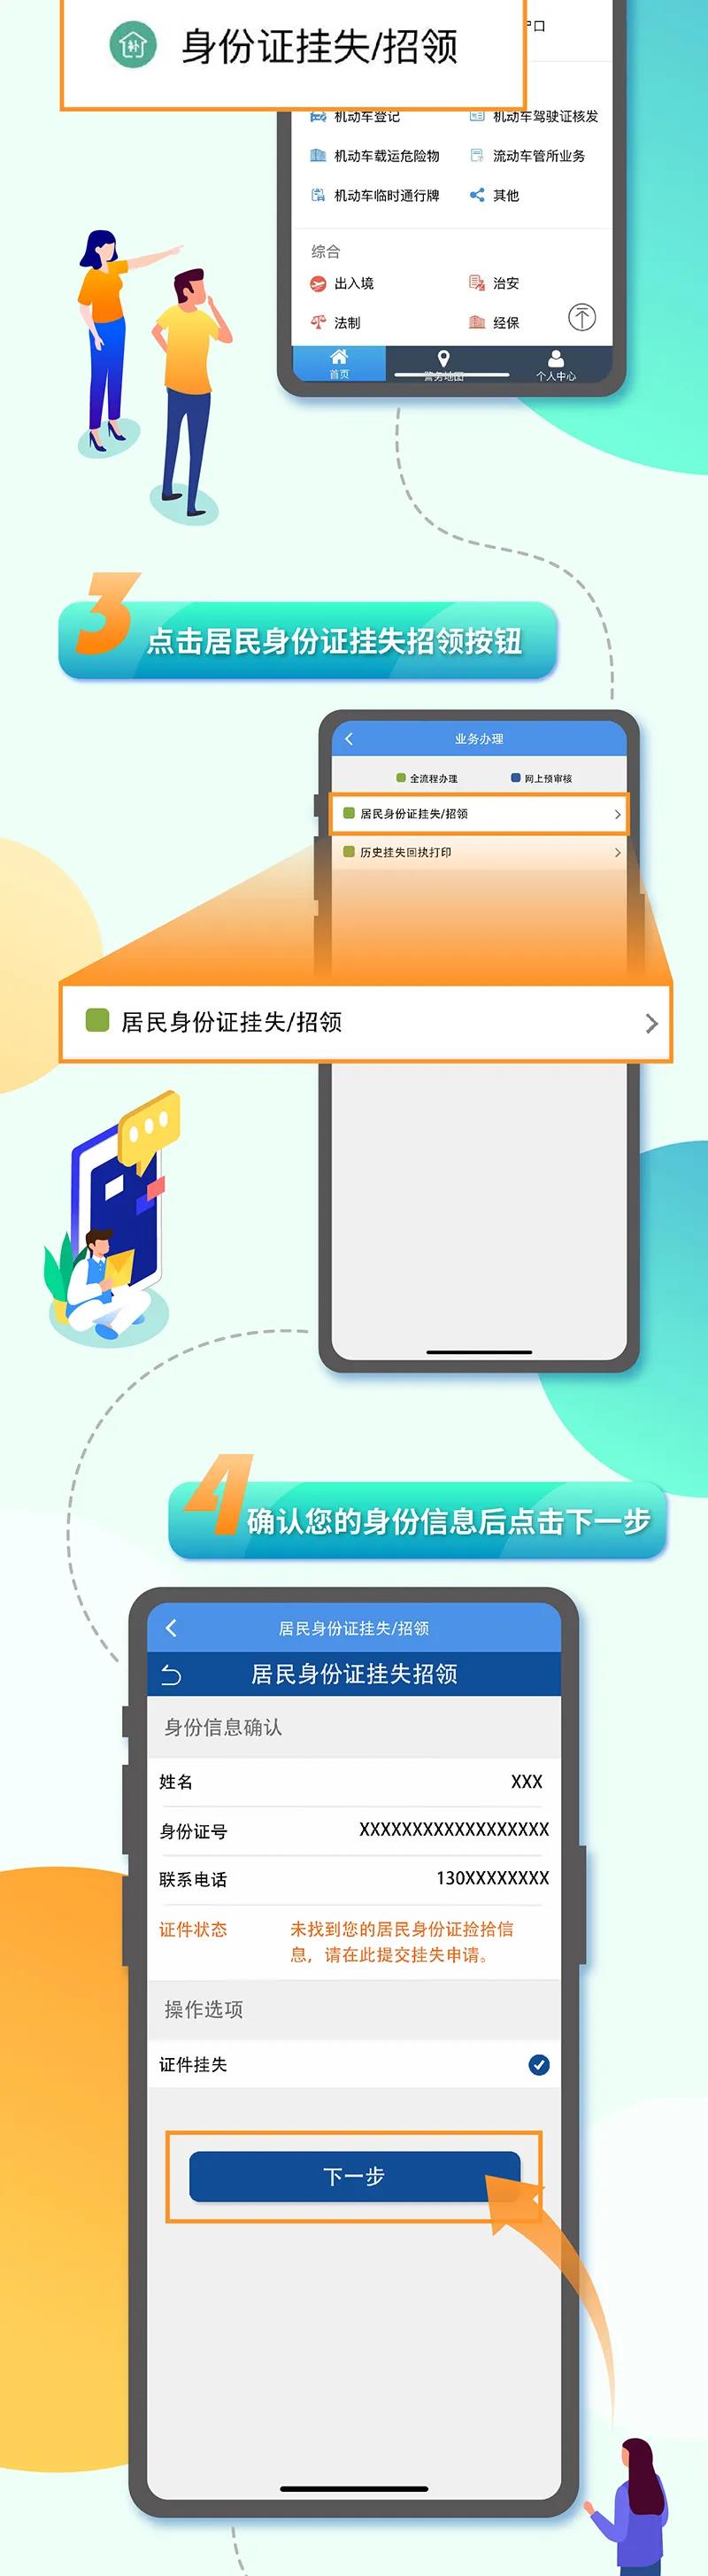 天津户籍人员身份证挂失网上办理流程